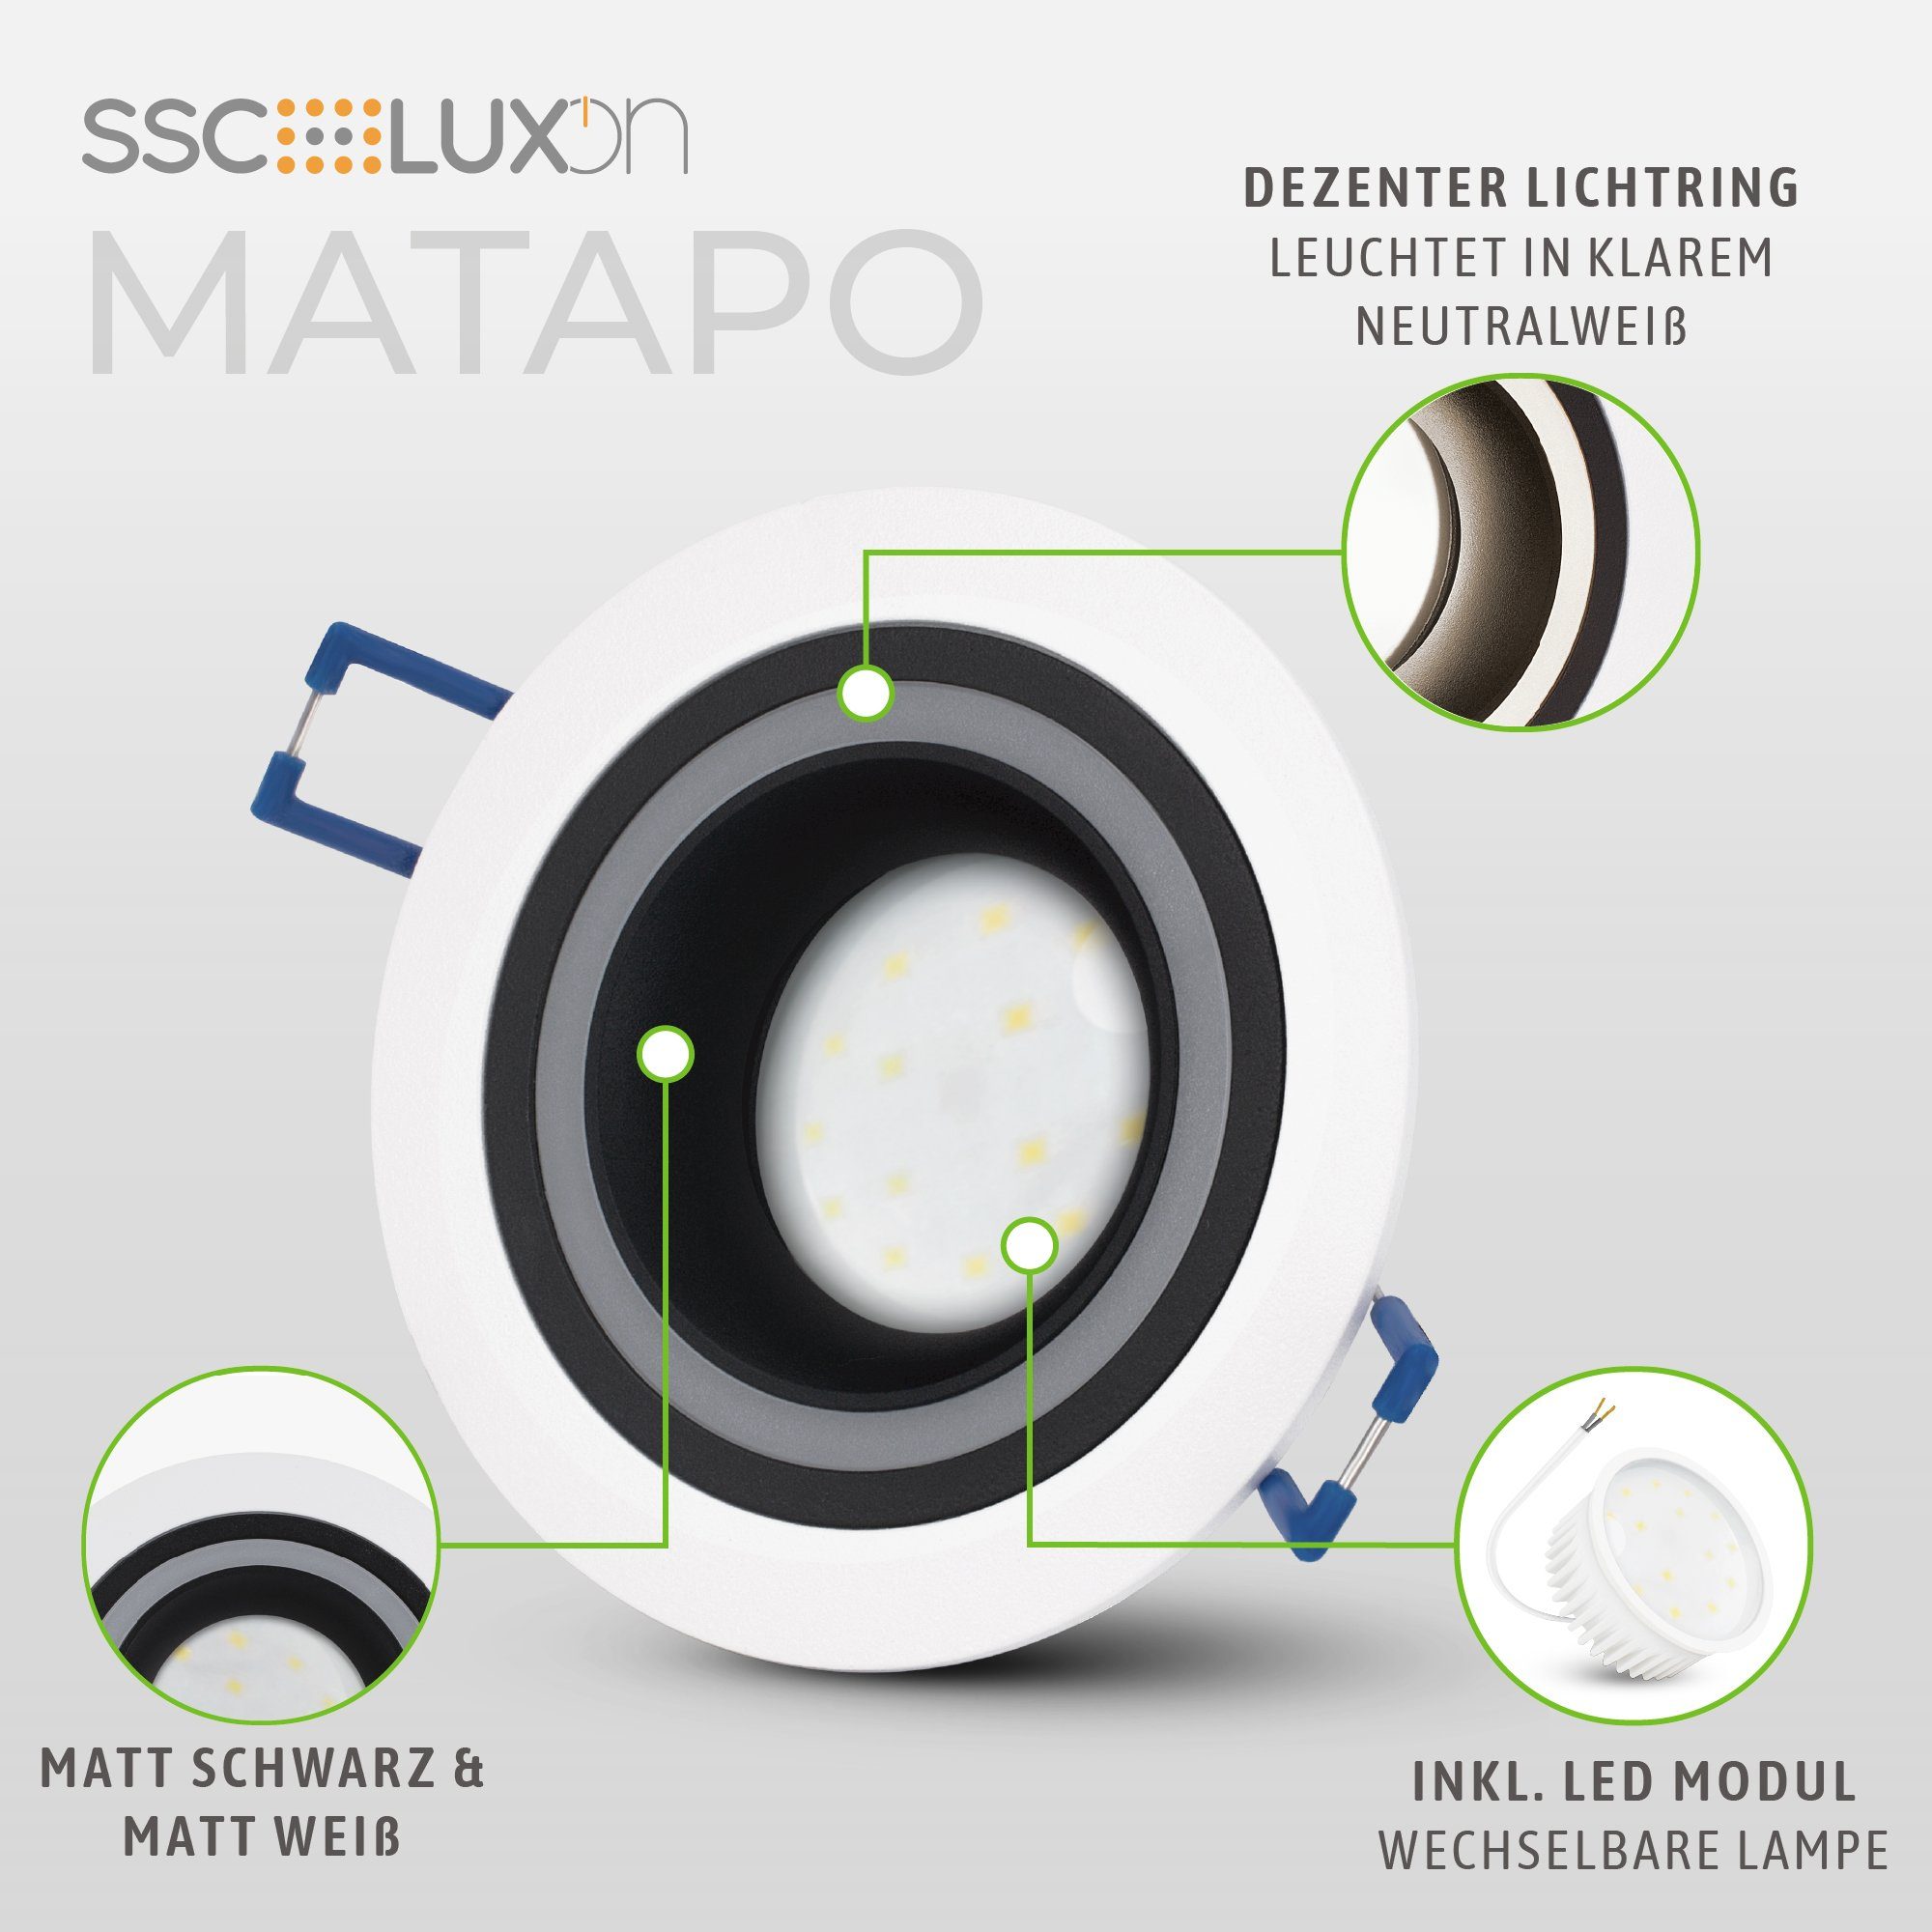 LED Neutralweiß Einbauspot SSC-LUXon schwarz LED Matapo Einbaustrahler 5W Design mit weiss neutralweiss, Modul